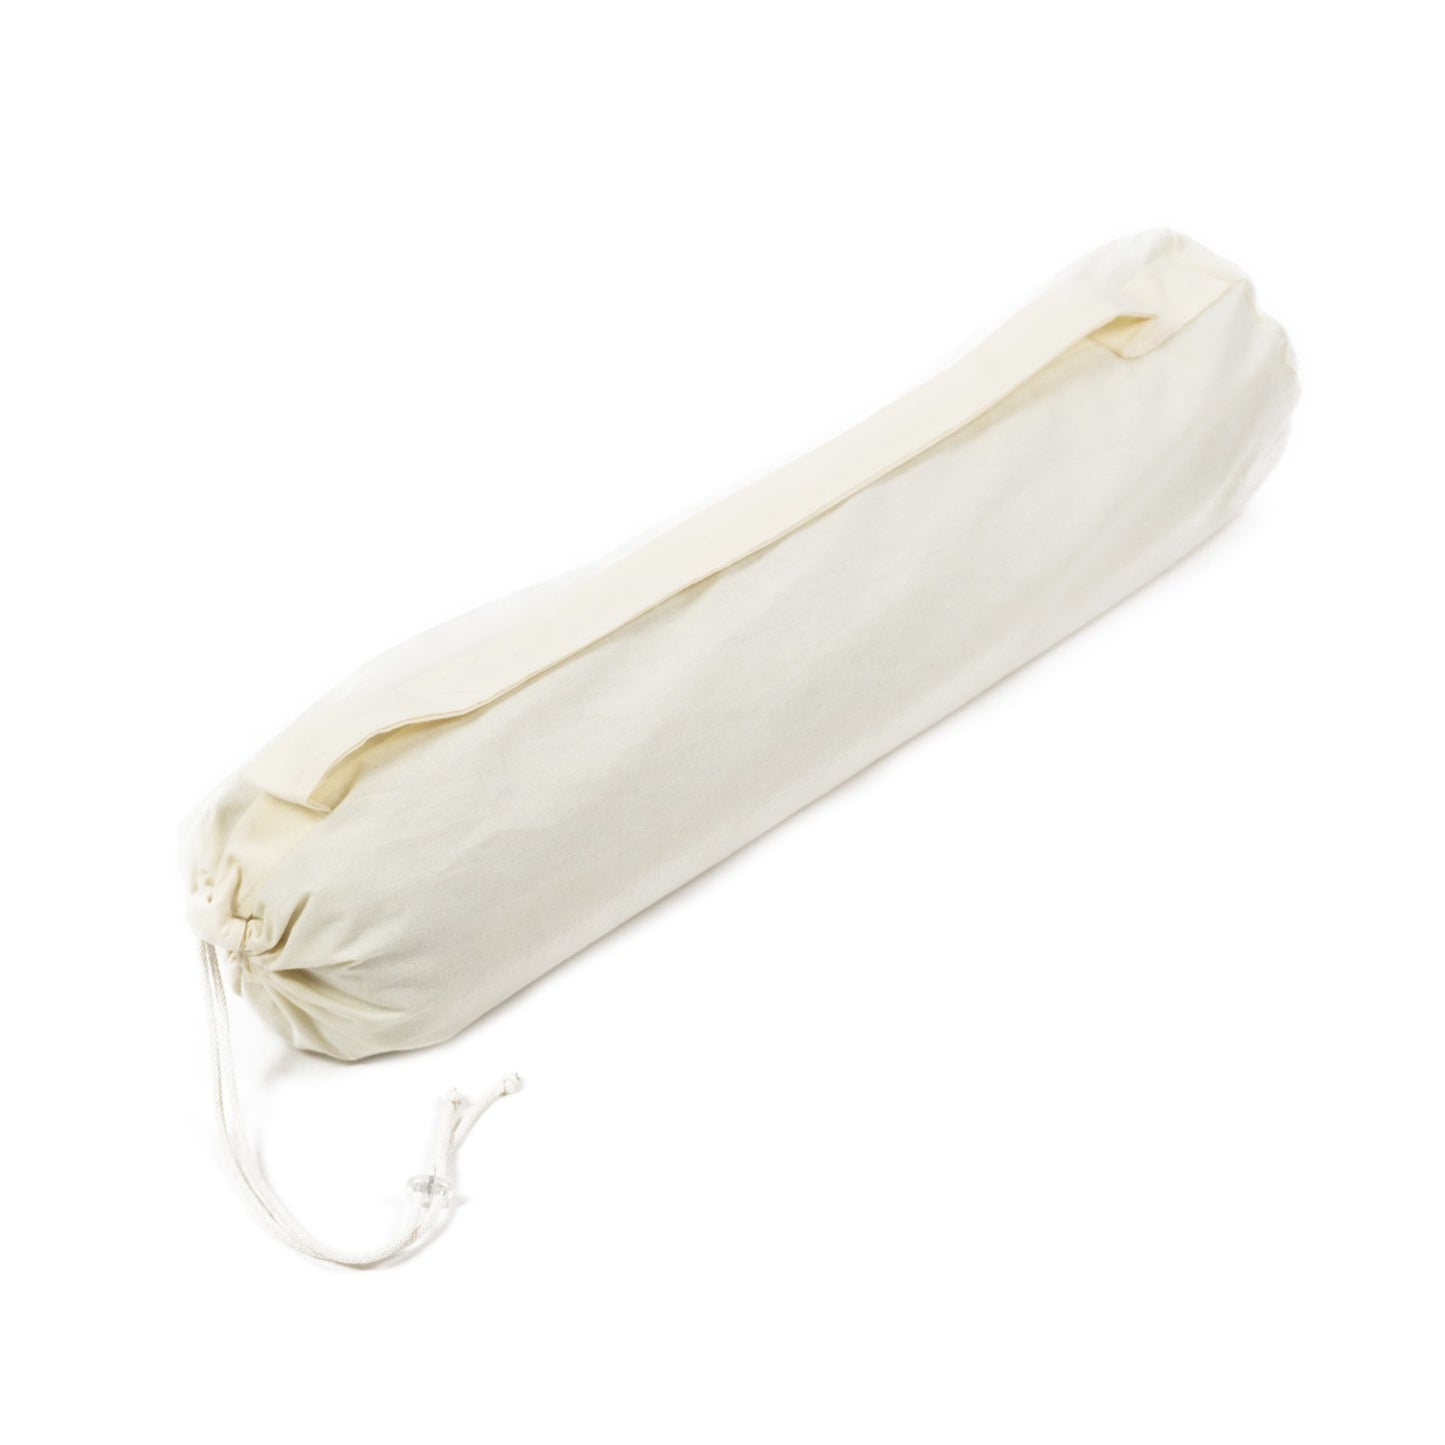 Merino scheerwollen yogamat met katoenen tas - antraciet - Extra lang